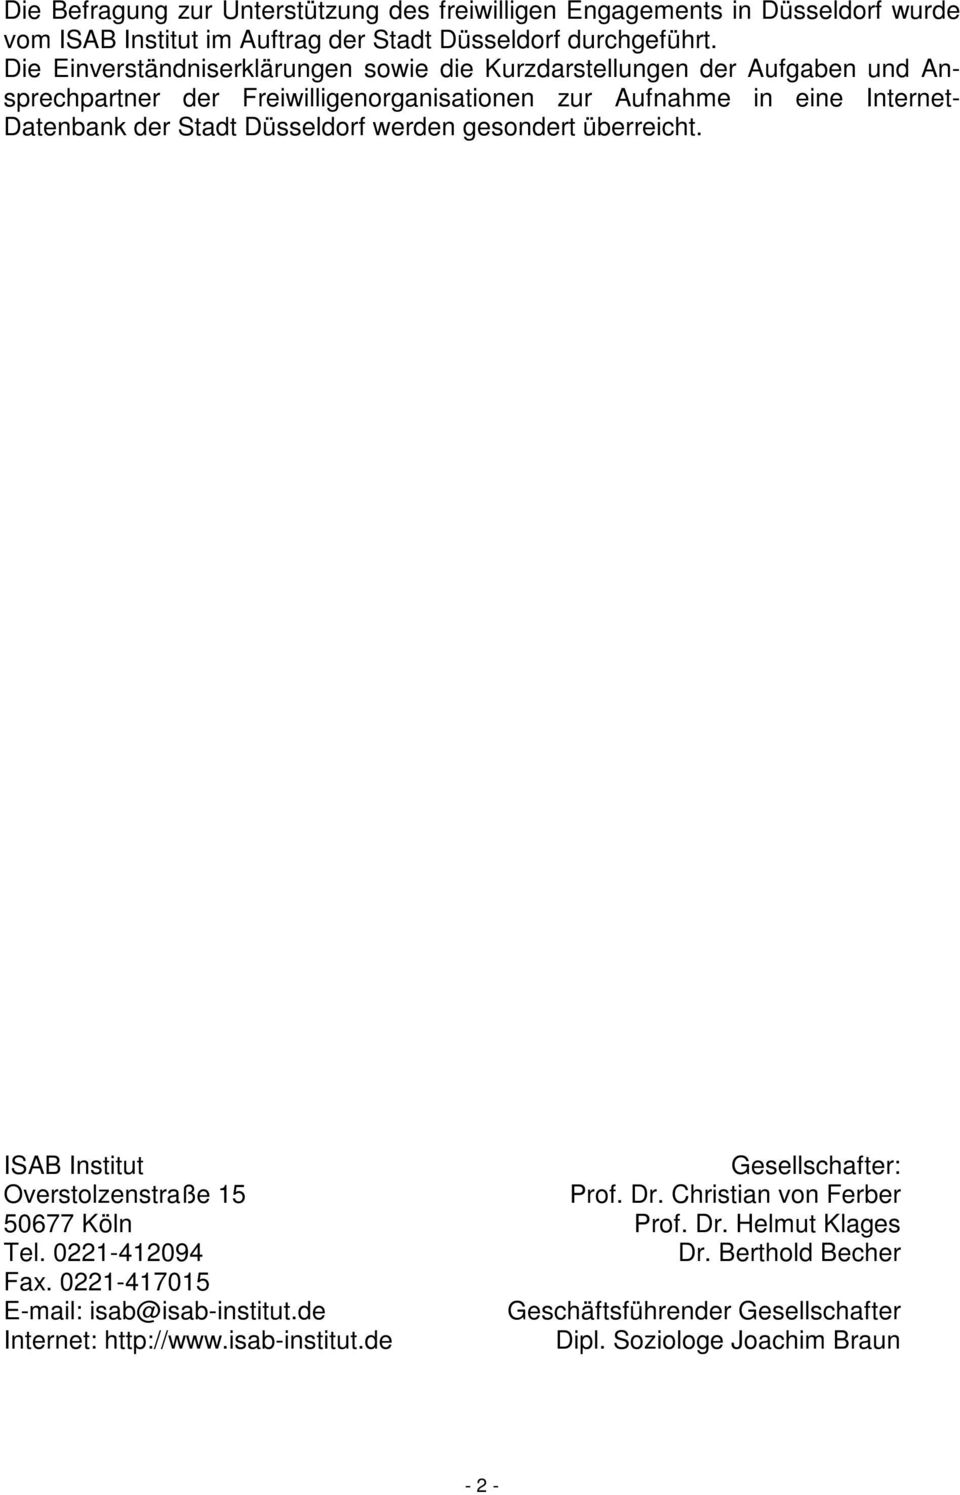 Stadt Düsseldorf werden gesondert überreicht. ISAB Institut Gesellschafter: Overstolzenstraße 15 Prof. Dr. Christian von Ferber 50677 Köln Prof. Dr. Helmut Klages Tel.